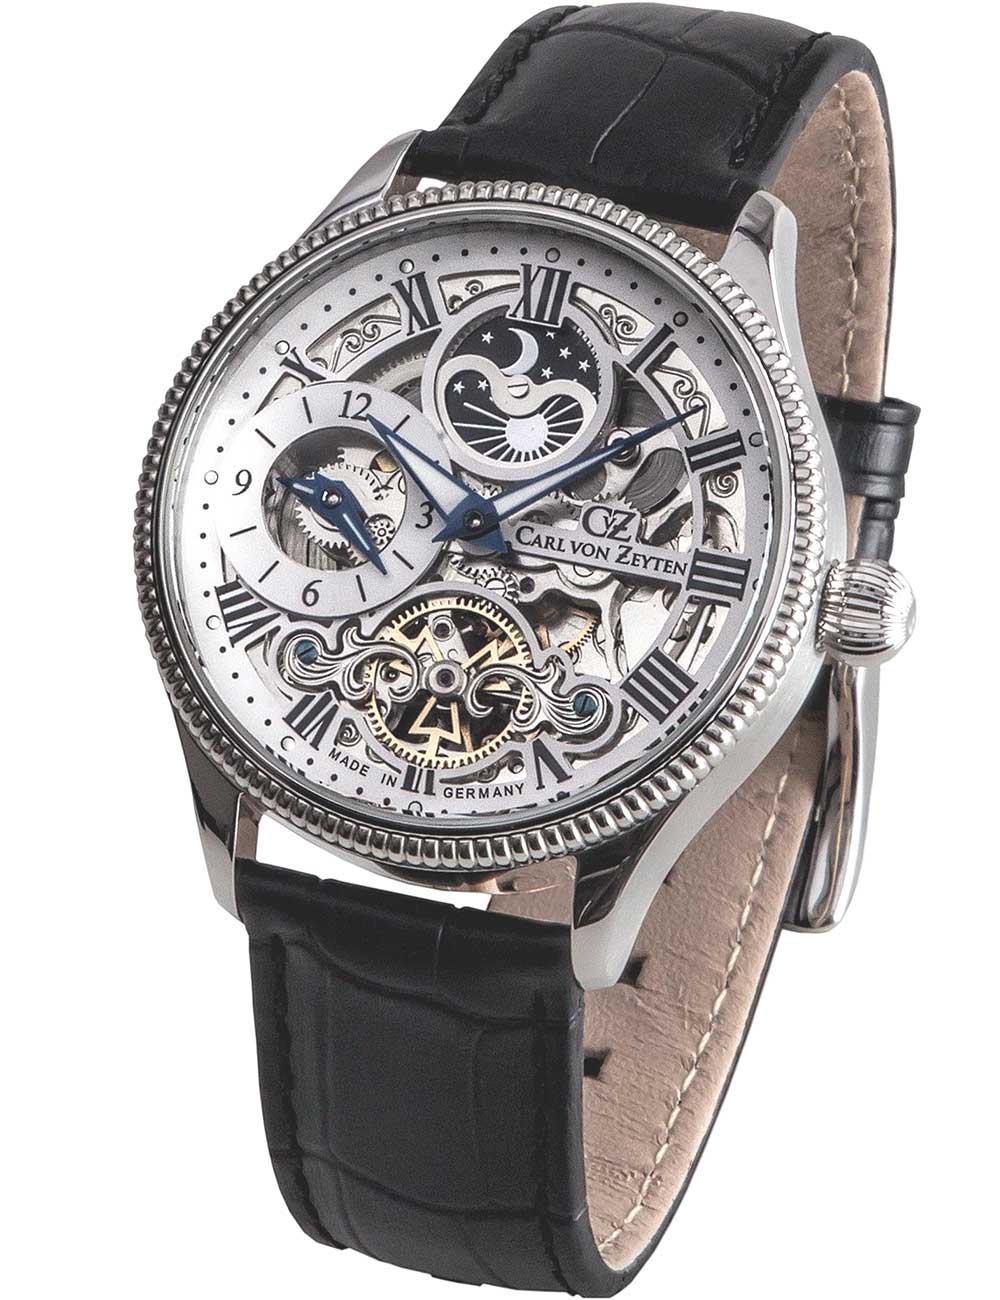 günstig & kaufen, von portofrei schnell Uhren: Carl Zeyten erhalten!